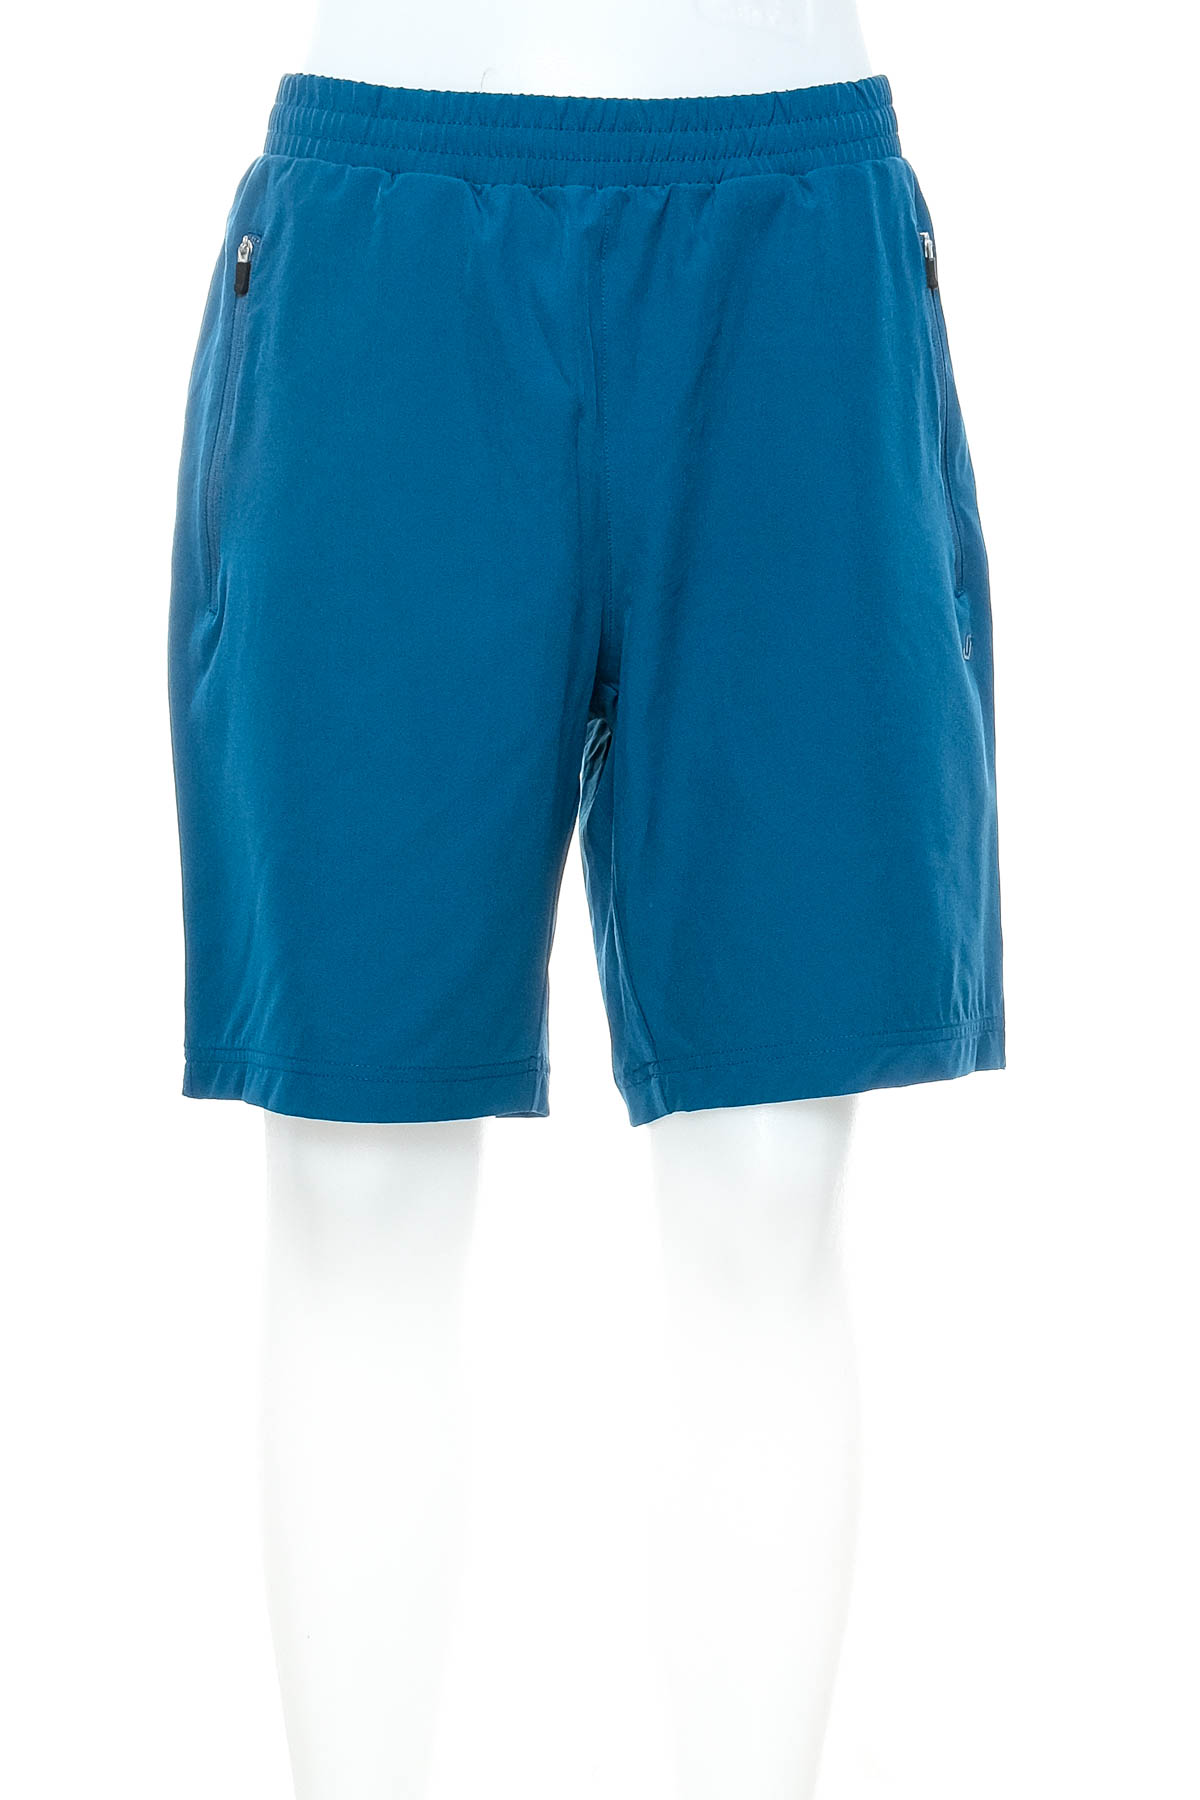 Men's shorts - JOY - 0